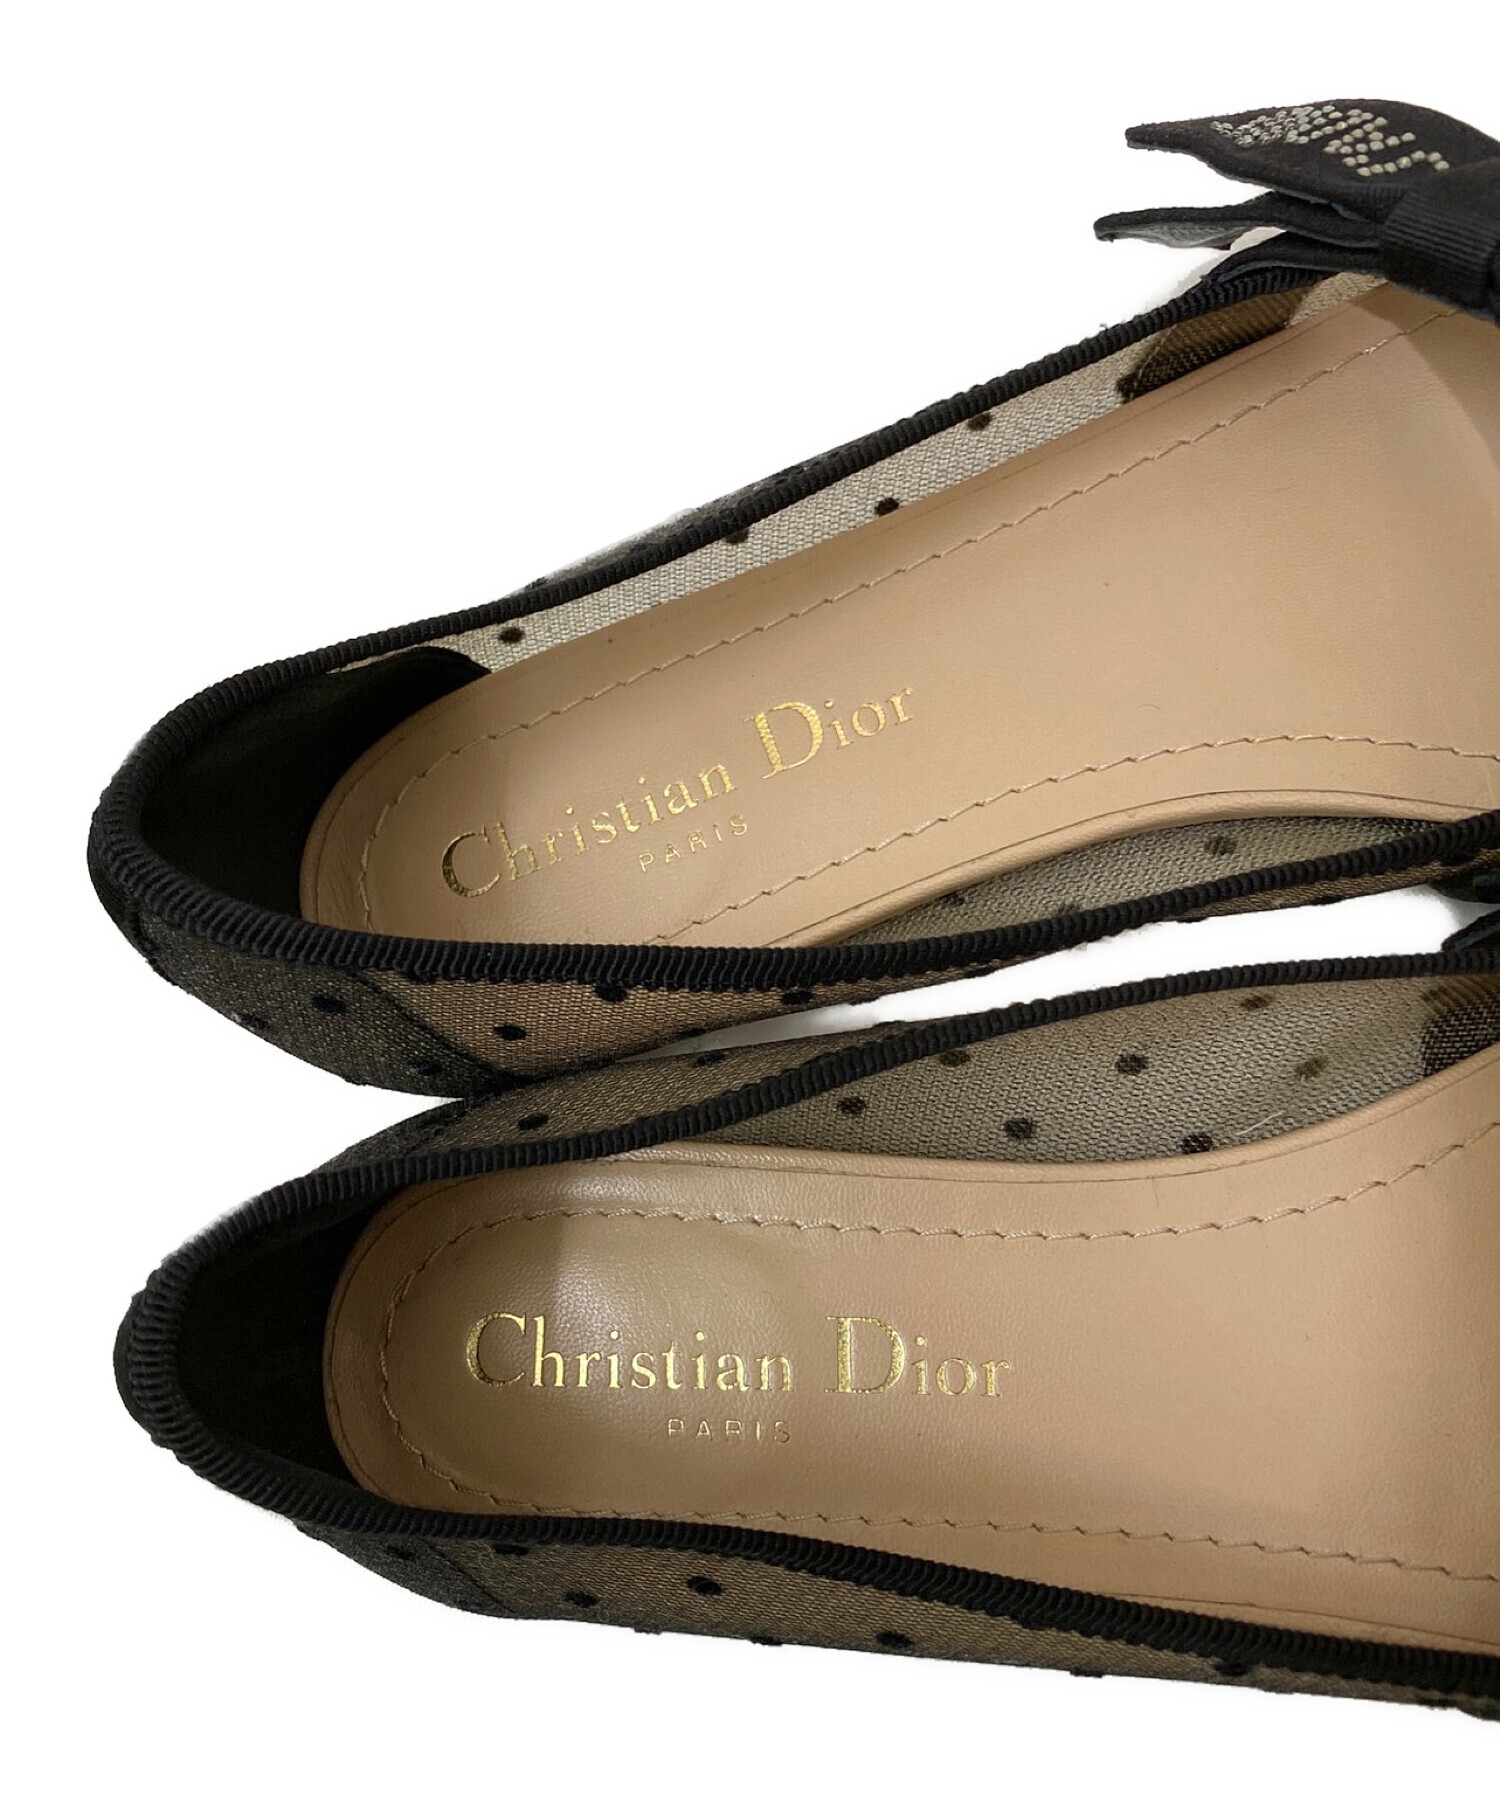 Christian Dior (クリスチャン ディオール) チュールドットバレエシューズ ブラックベージュ サイズ:36 1/2